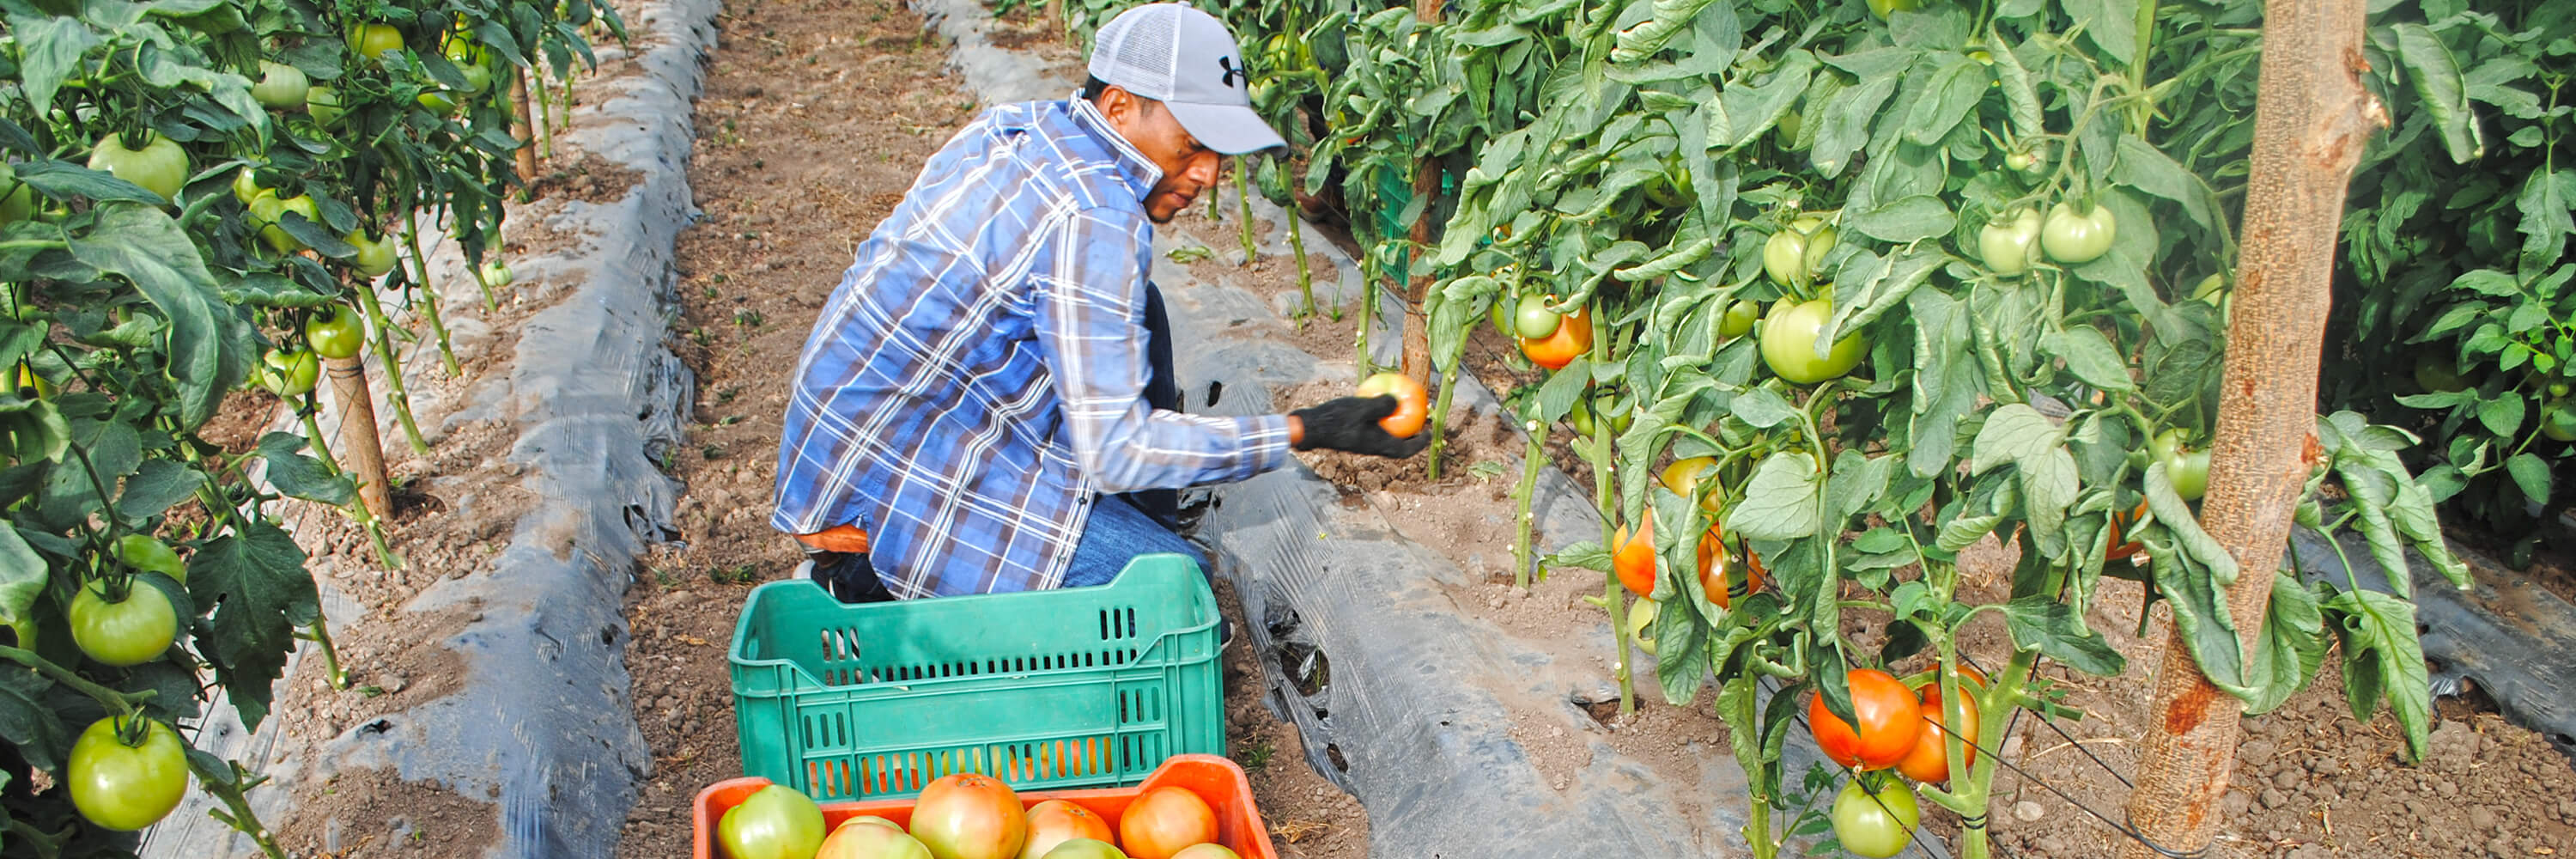 Cultivo de tomate manzano